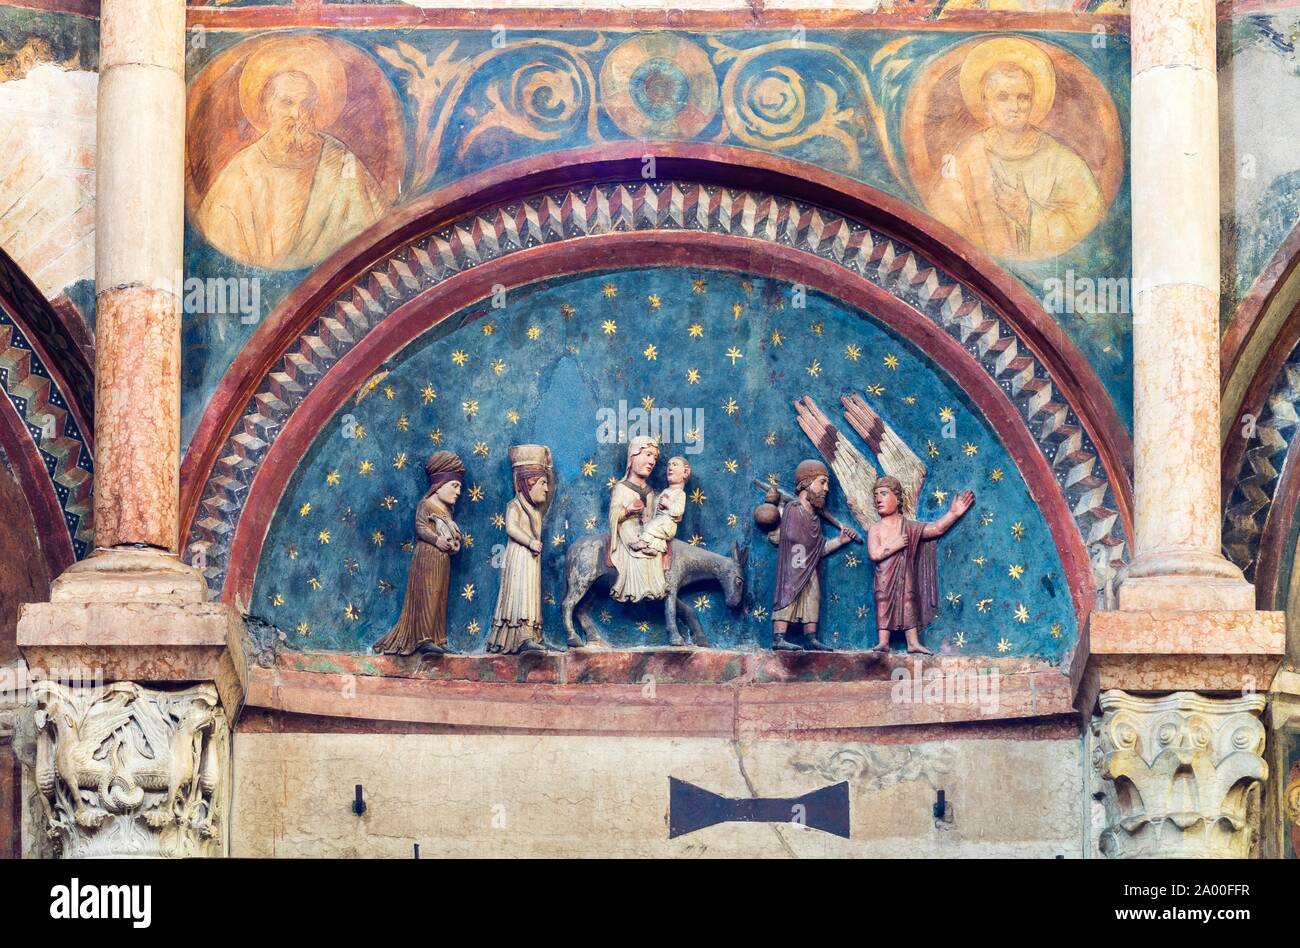 Soulagement en pierre de style roman au-dessus du portail, fuite en Egypte, baptistère, Parme, Emilie-Romagne, Italie Banque D'Images